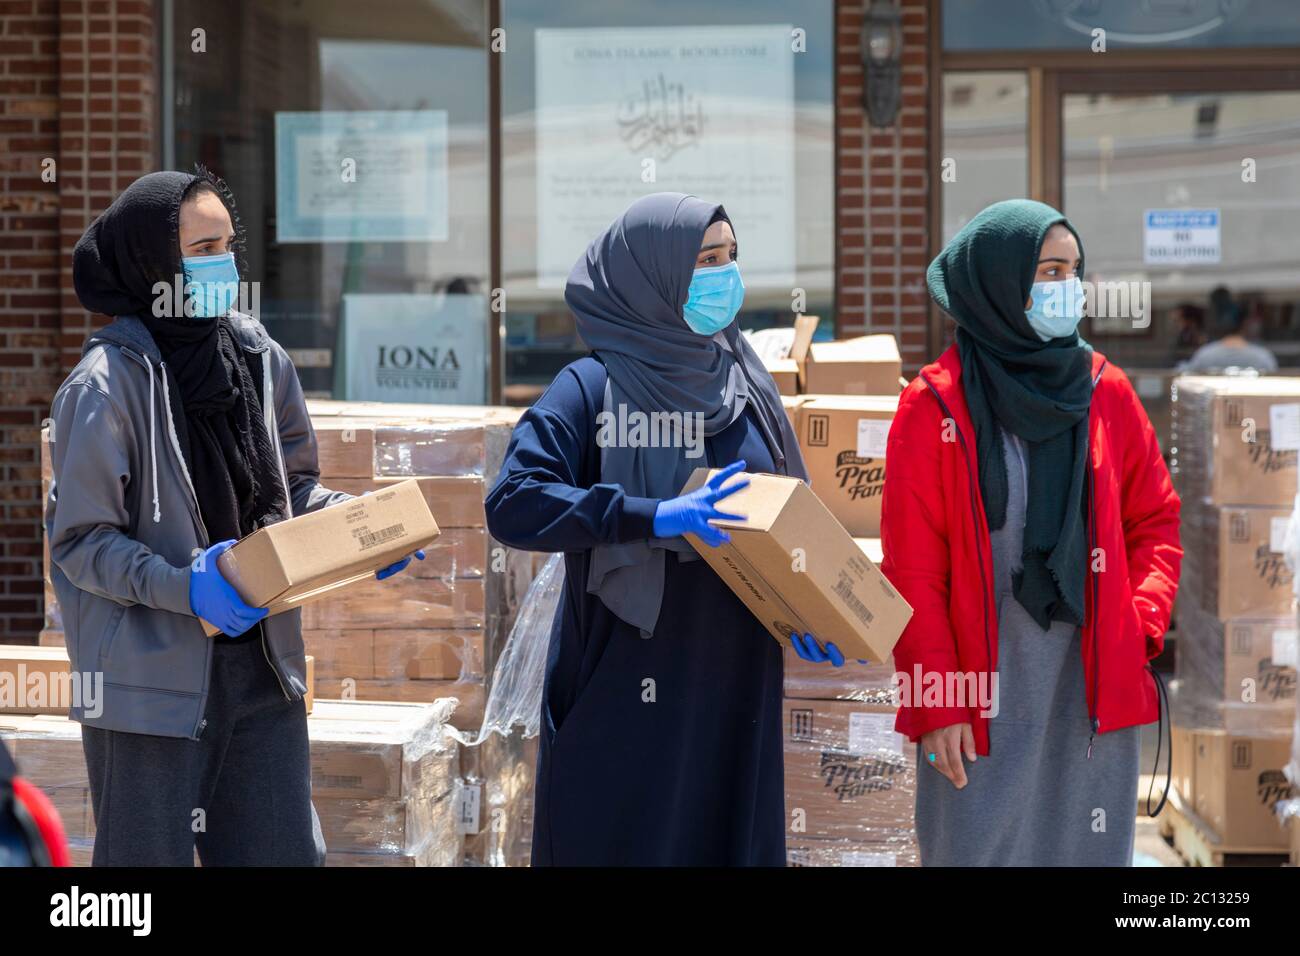 Warren, Michigan, USA. Juni 2020. Während der Coronavirus-Pandemie verteilte der Michigan Muslim Community Council Kästen mit Milchprodukten und frischen Produkten an alle Bedürftigen. Quelle: Jim West/Alamy Live News Stockfoto